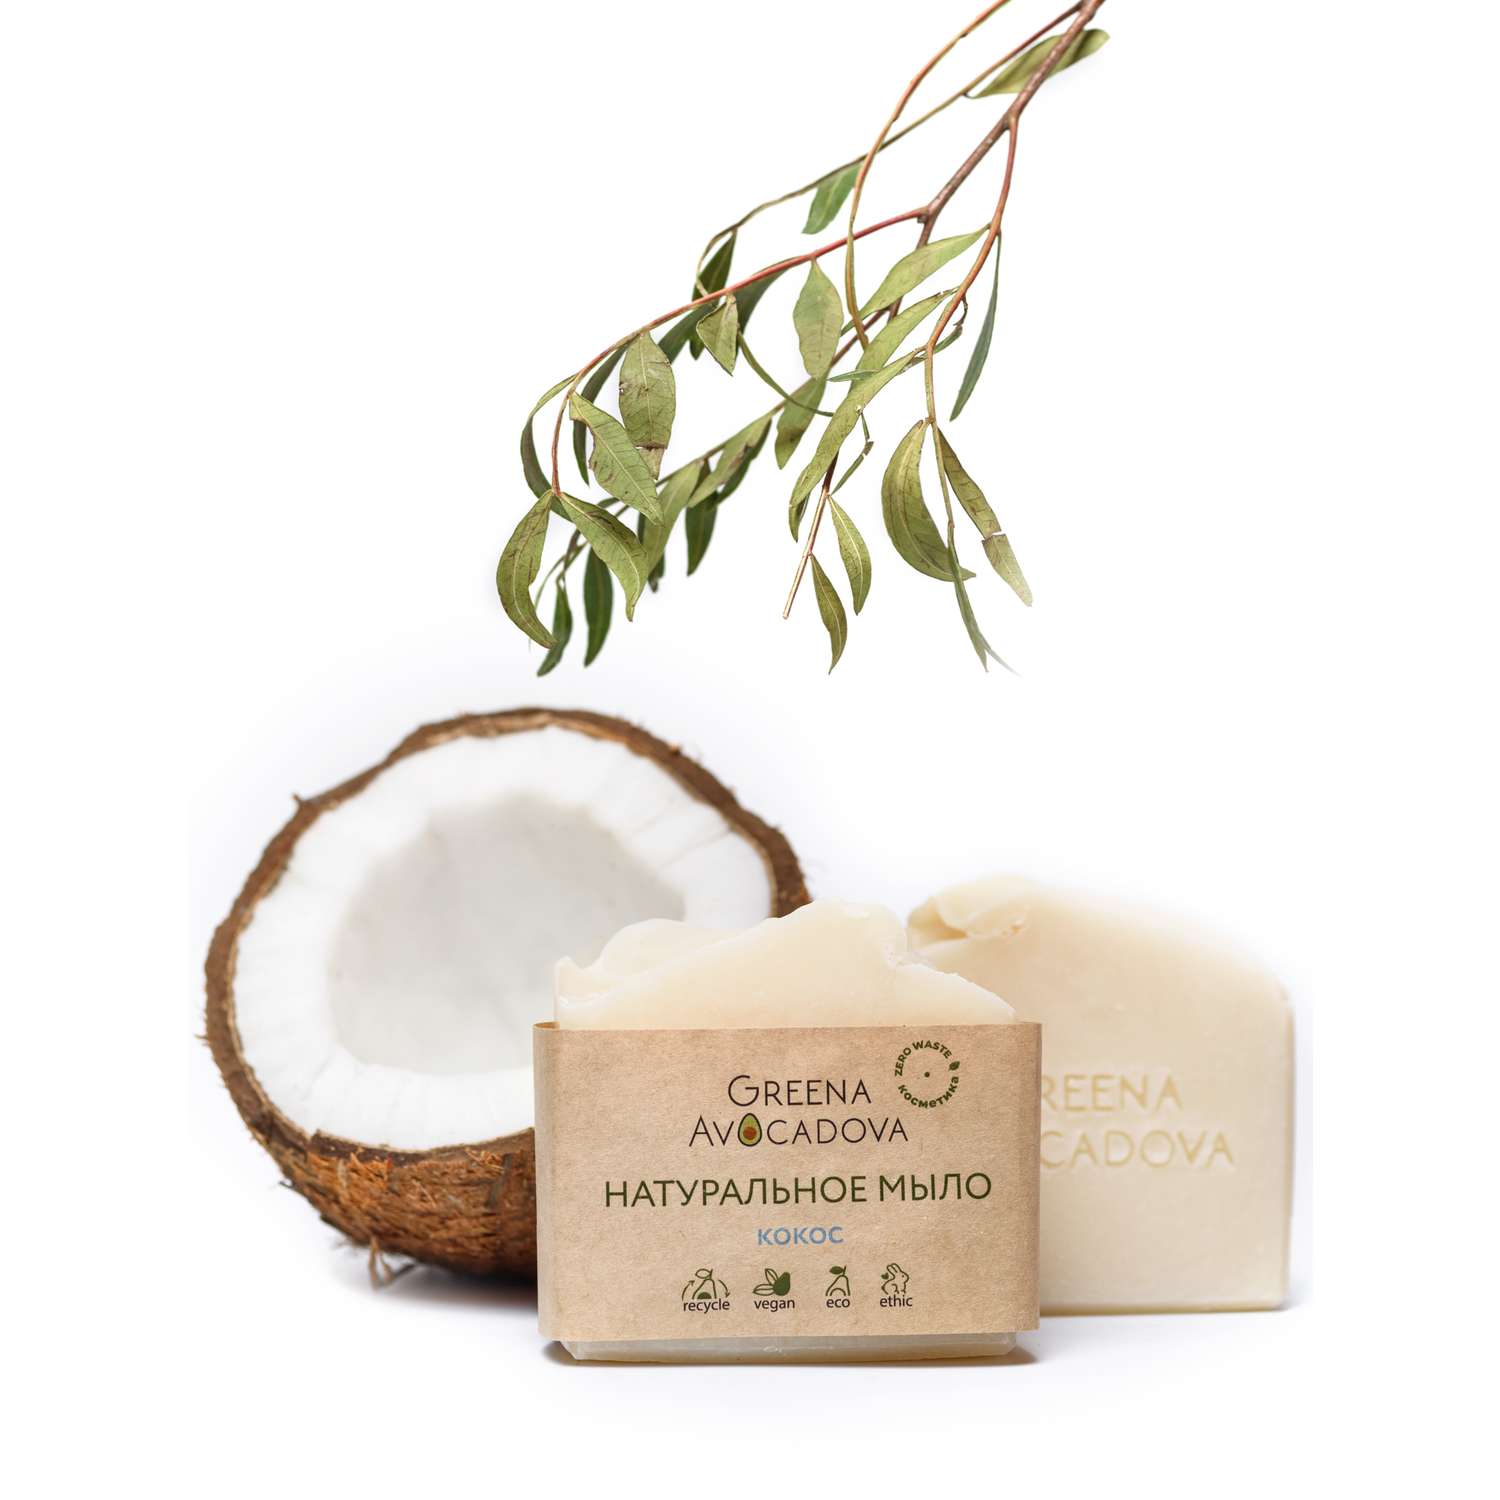 Натуральное мыло ручной работы Greena Avocadova кокос - фото 2